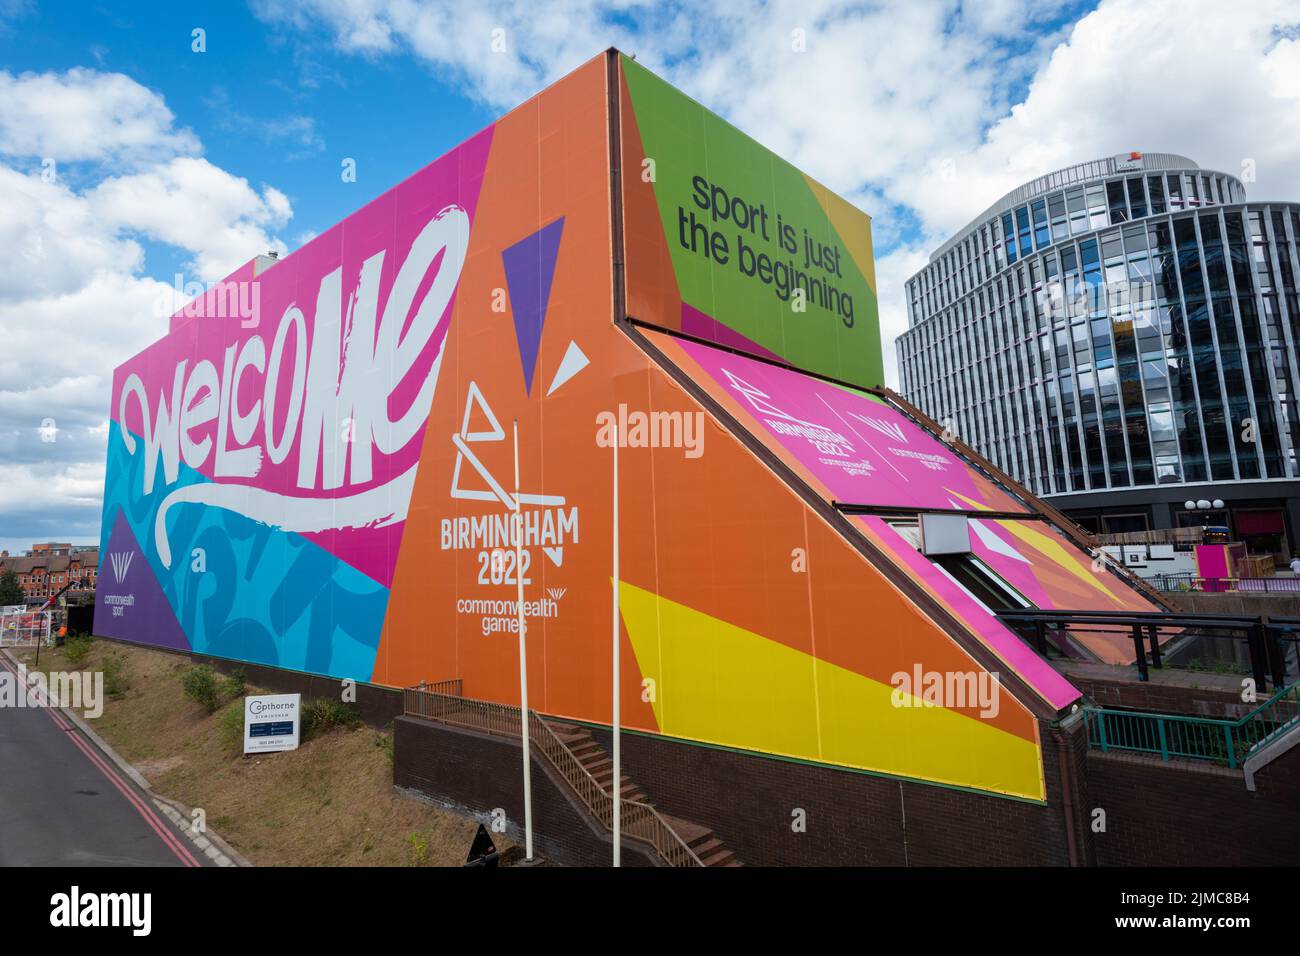 Publicidad a gran escala en un edificio, Birmingham, Reino Unido, la promoción de la commonwealth ganes 2022 Foto de stock